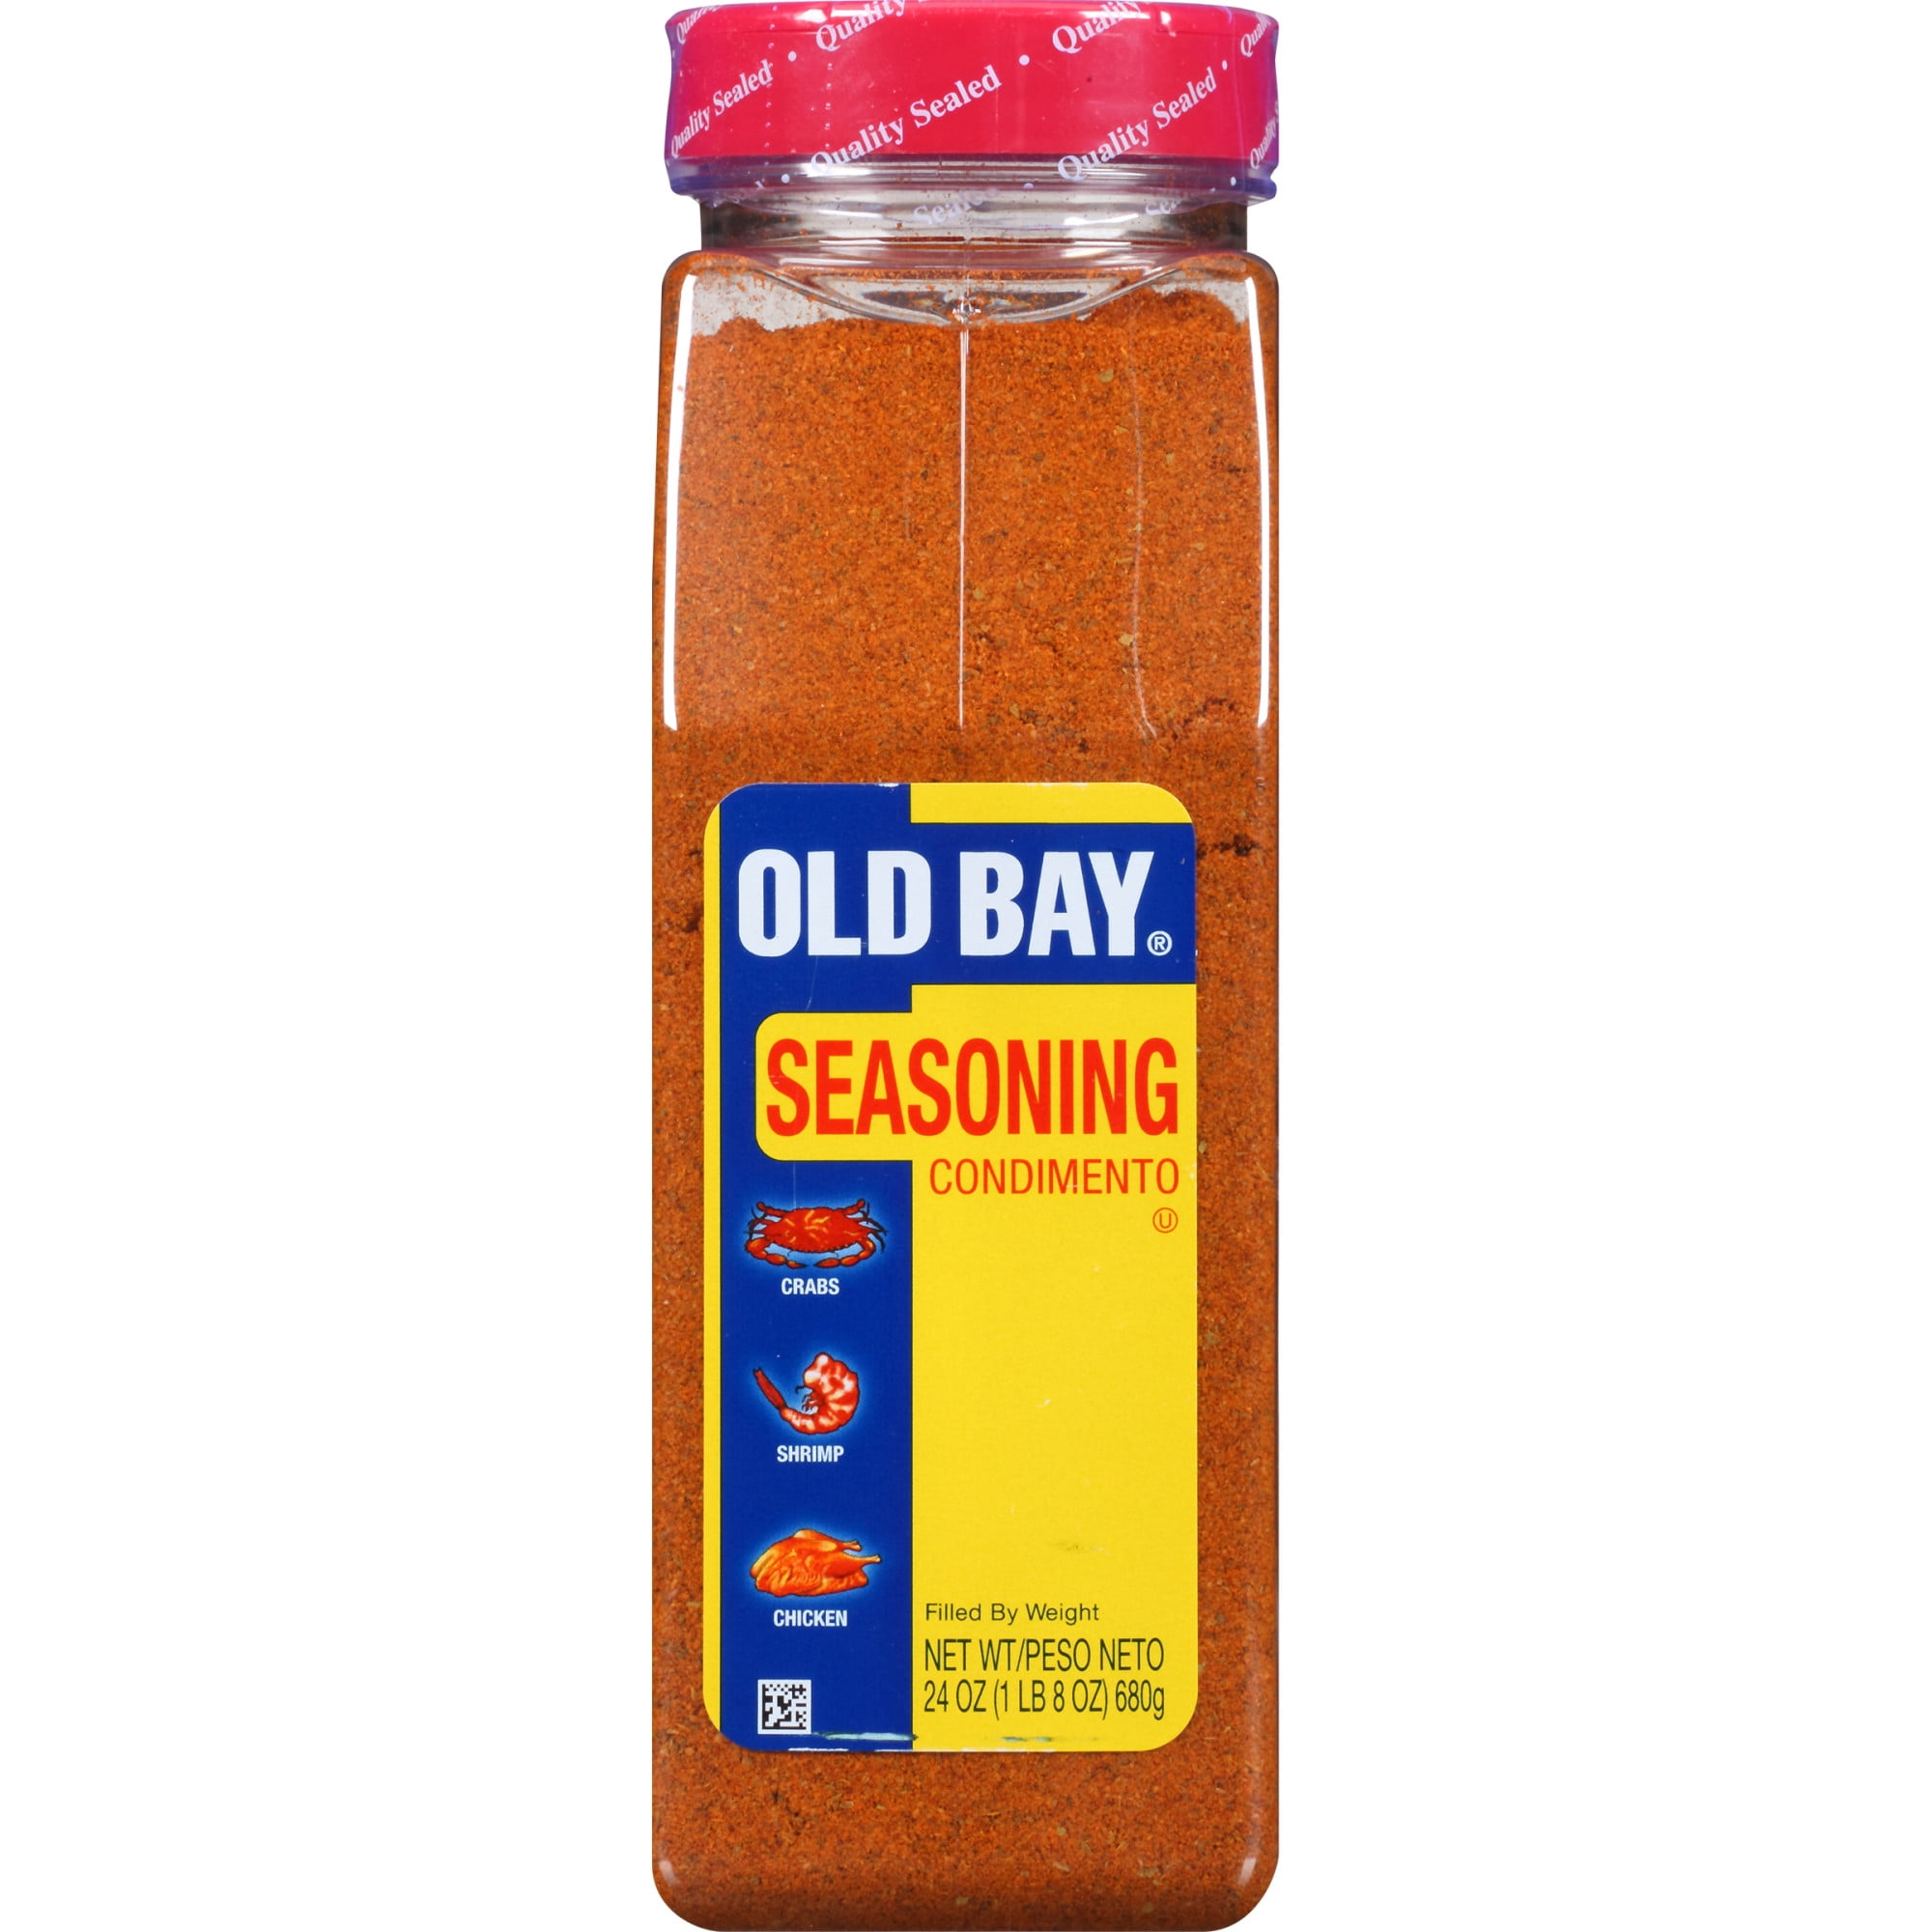 Jan's Old Bay Seasoning Substitute Recipe